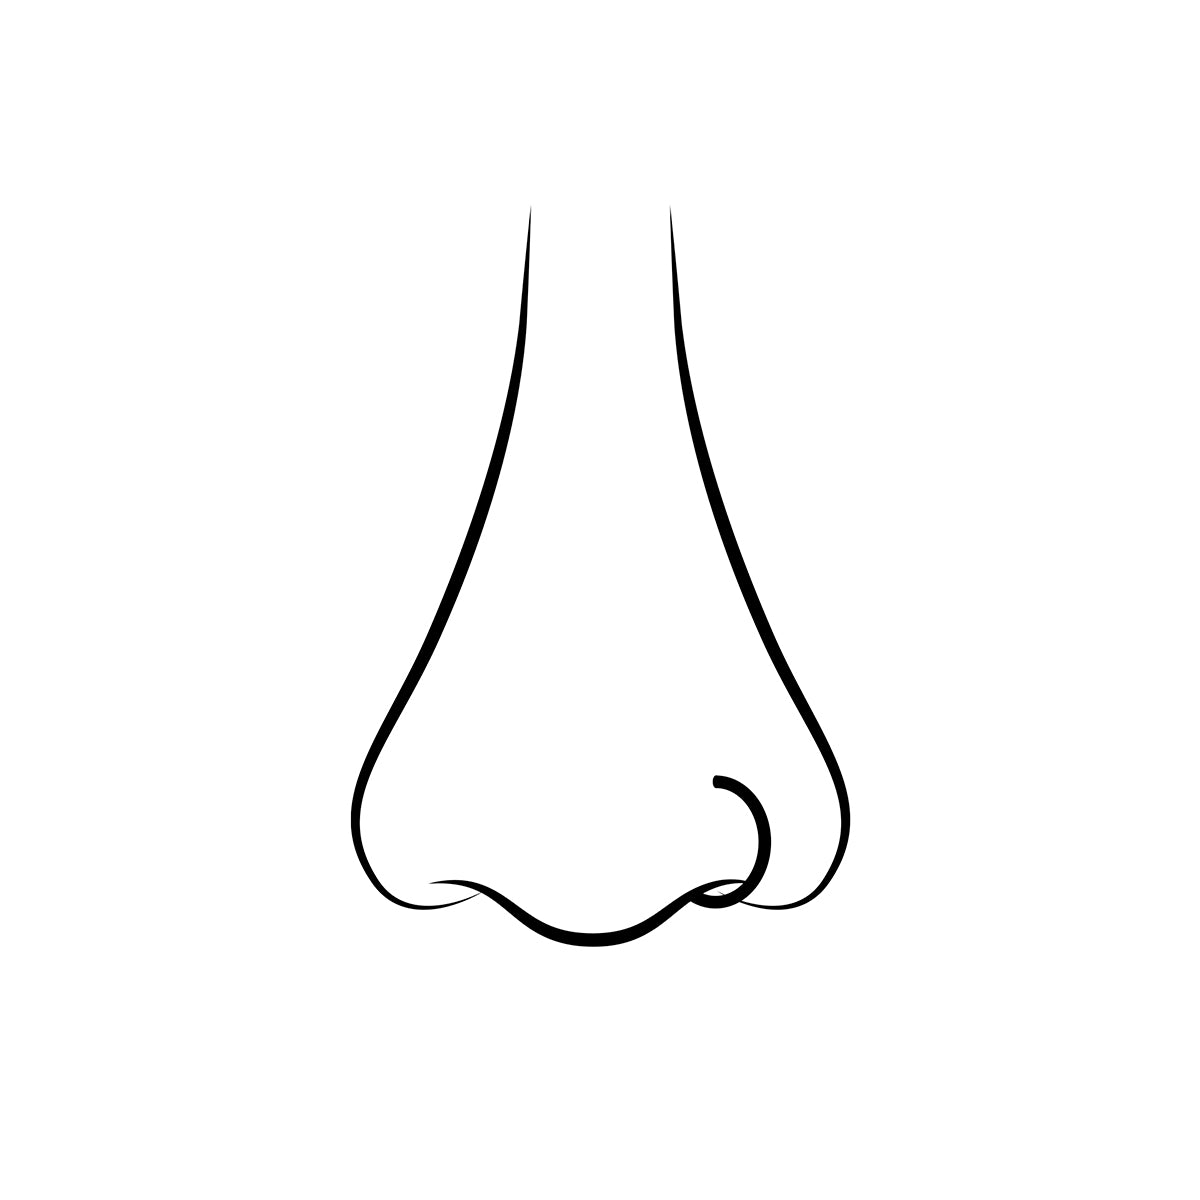 Piercing aro doble espiral de nariz